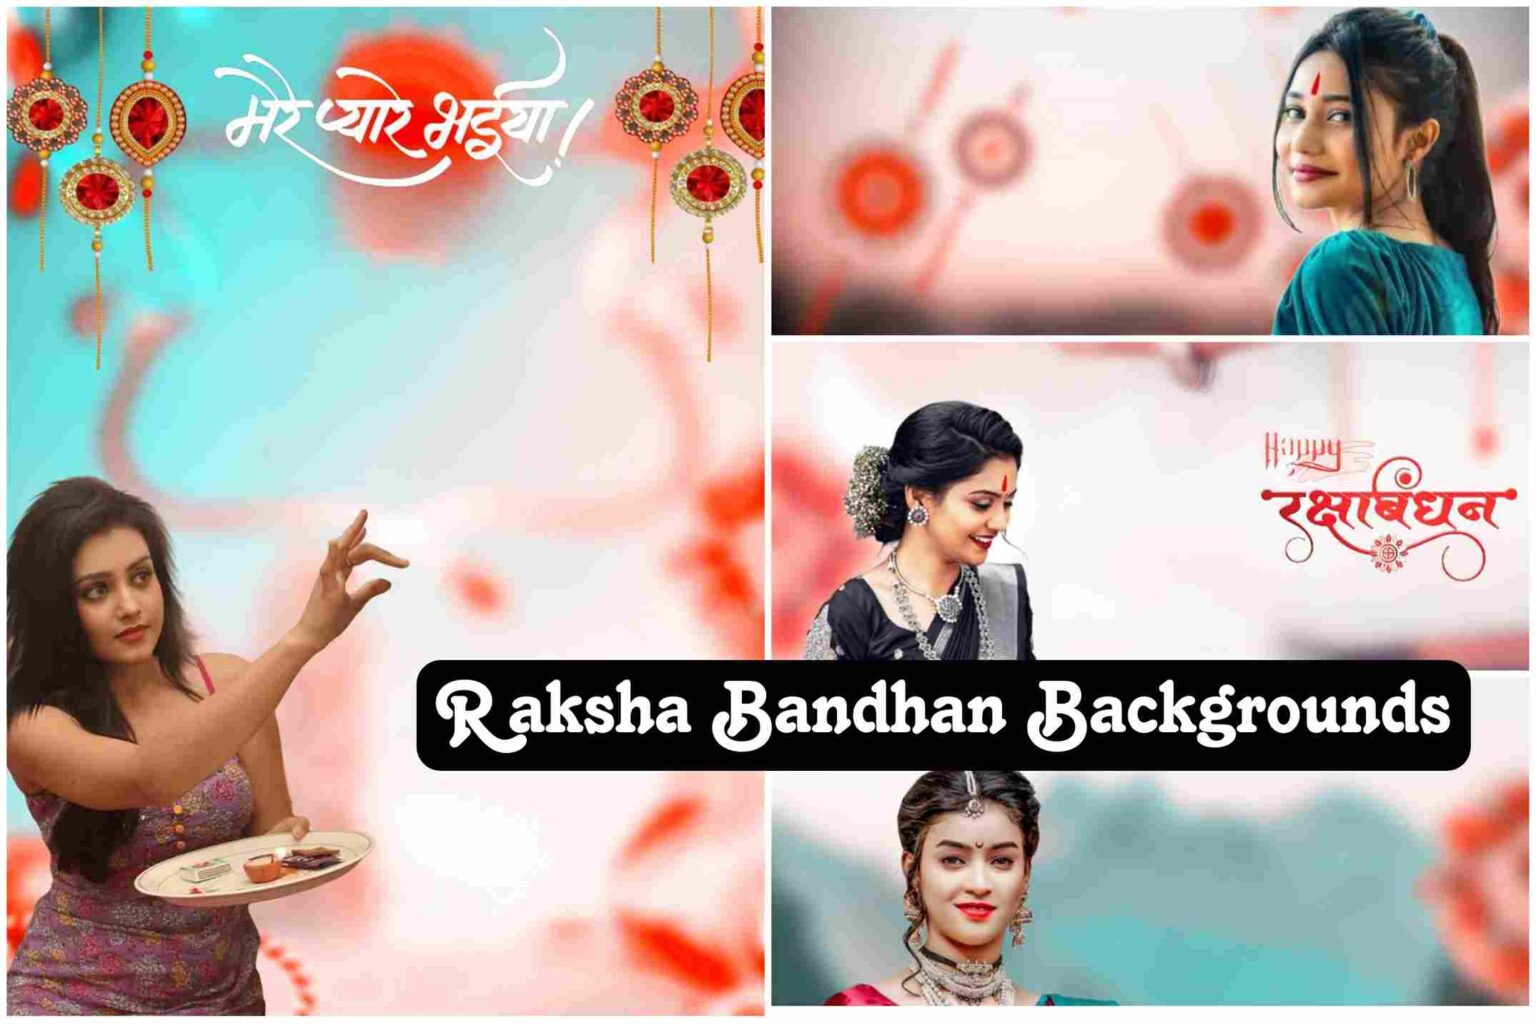 Best Raksha Bandhan Background Images Hd for Editing